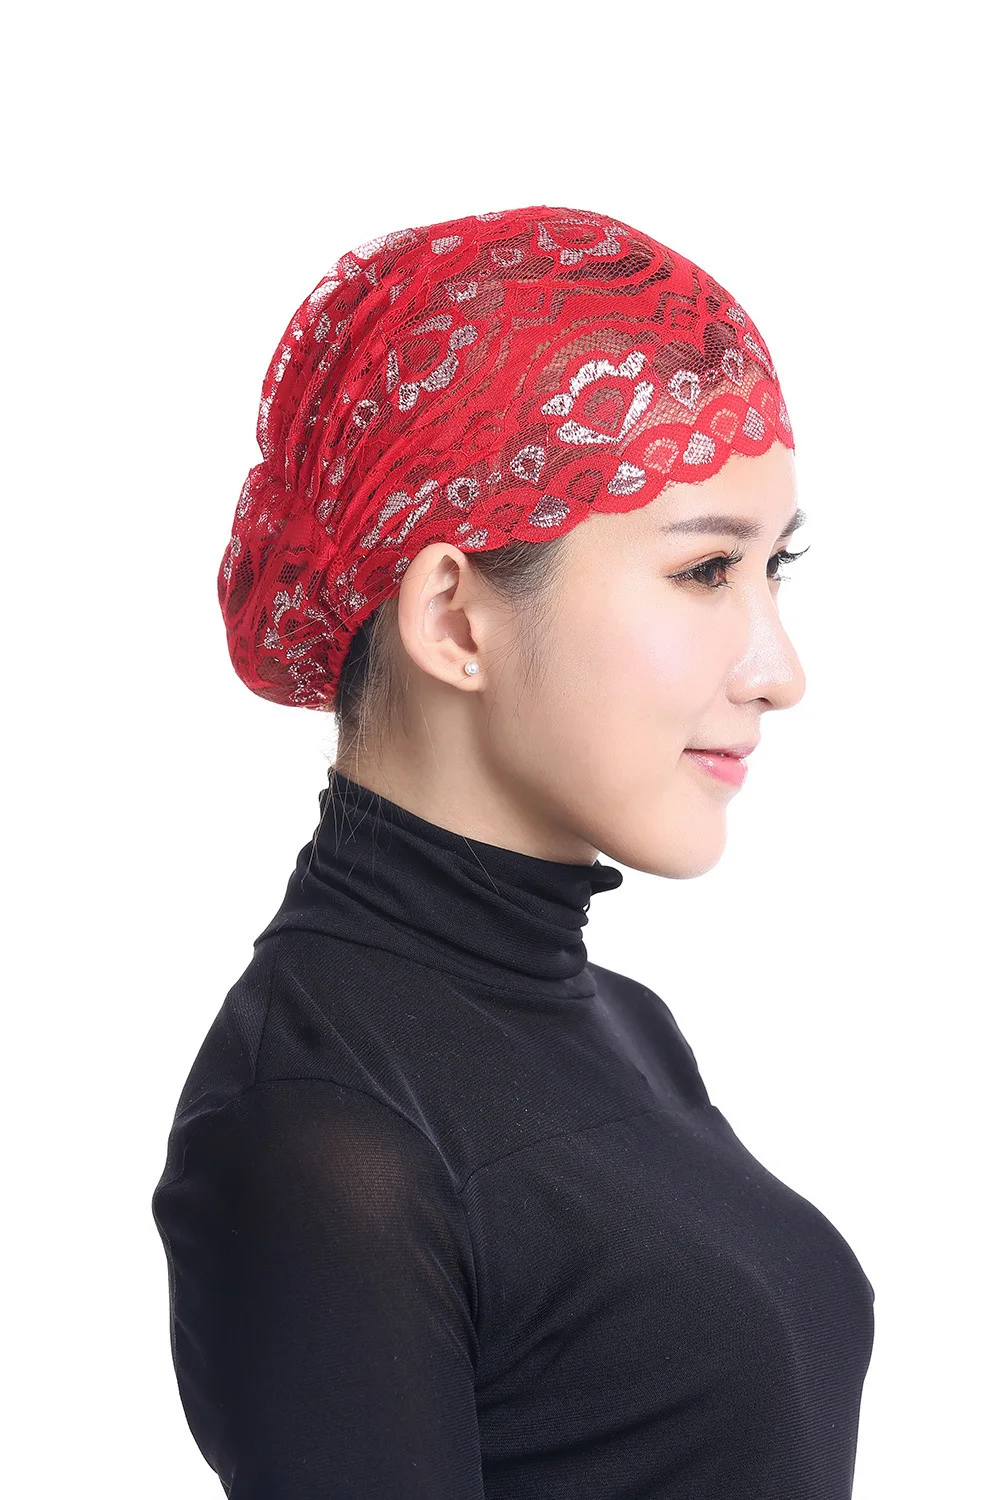 DJGRSTER 2019 Новый Полный Обложка Внутренний мусульманская хиджаб с кружевом Кепки Исламская голову носить шляпу Хид 12 Цветов Для женщин